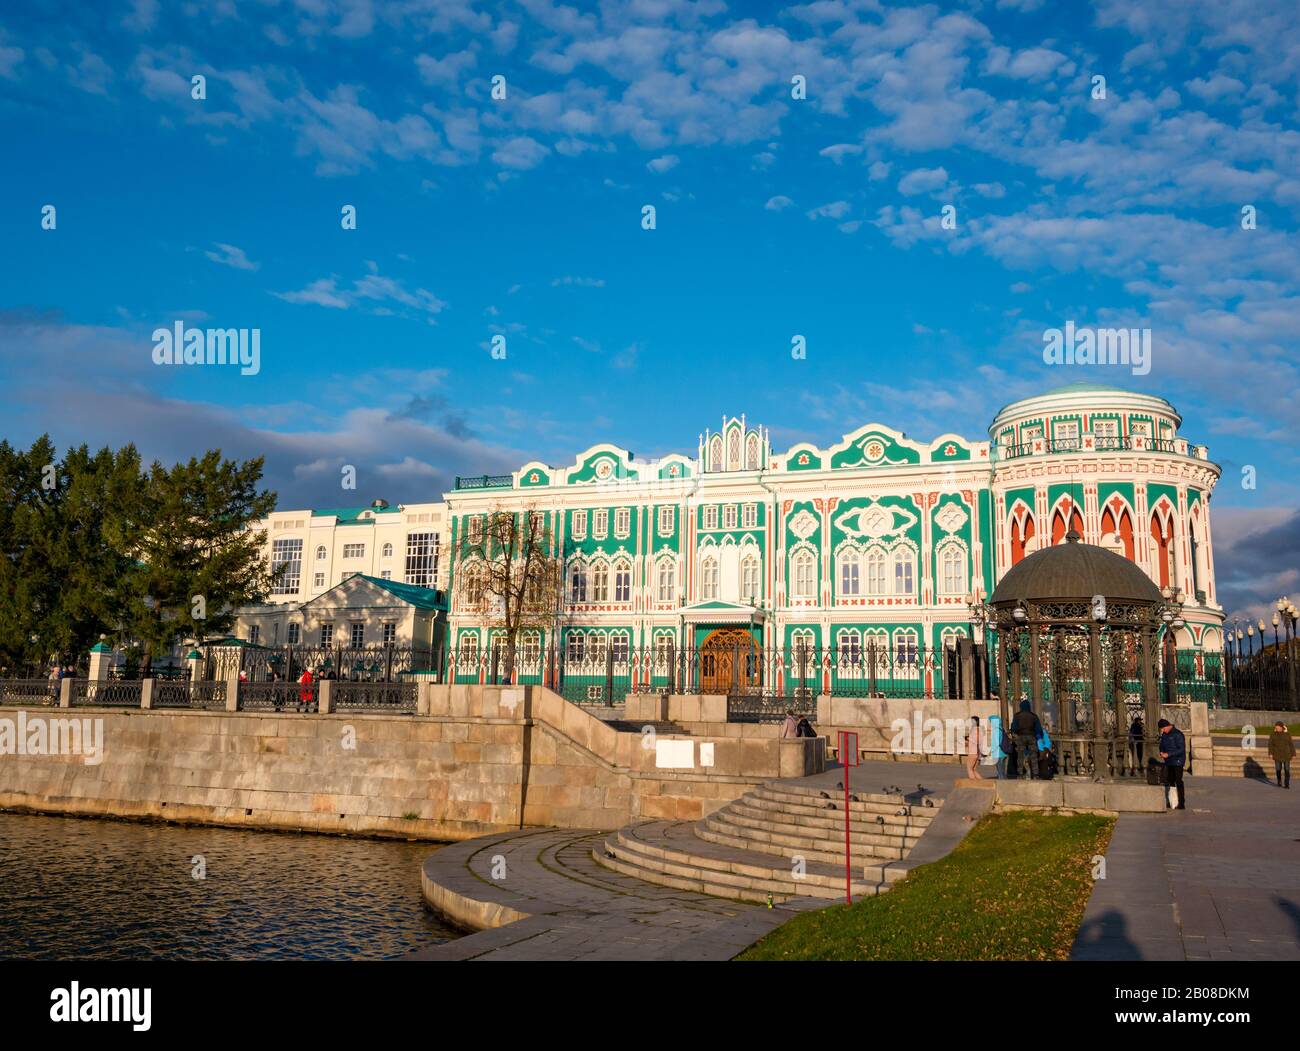 Farbenfrohes historisches Sevastyanova Haus am Ufer des städtischen Sees, Lenin-Allee, Jekaterinburg, Sibirien, Russische Föderation Stockfoto